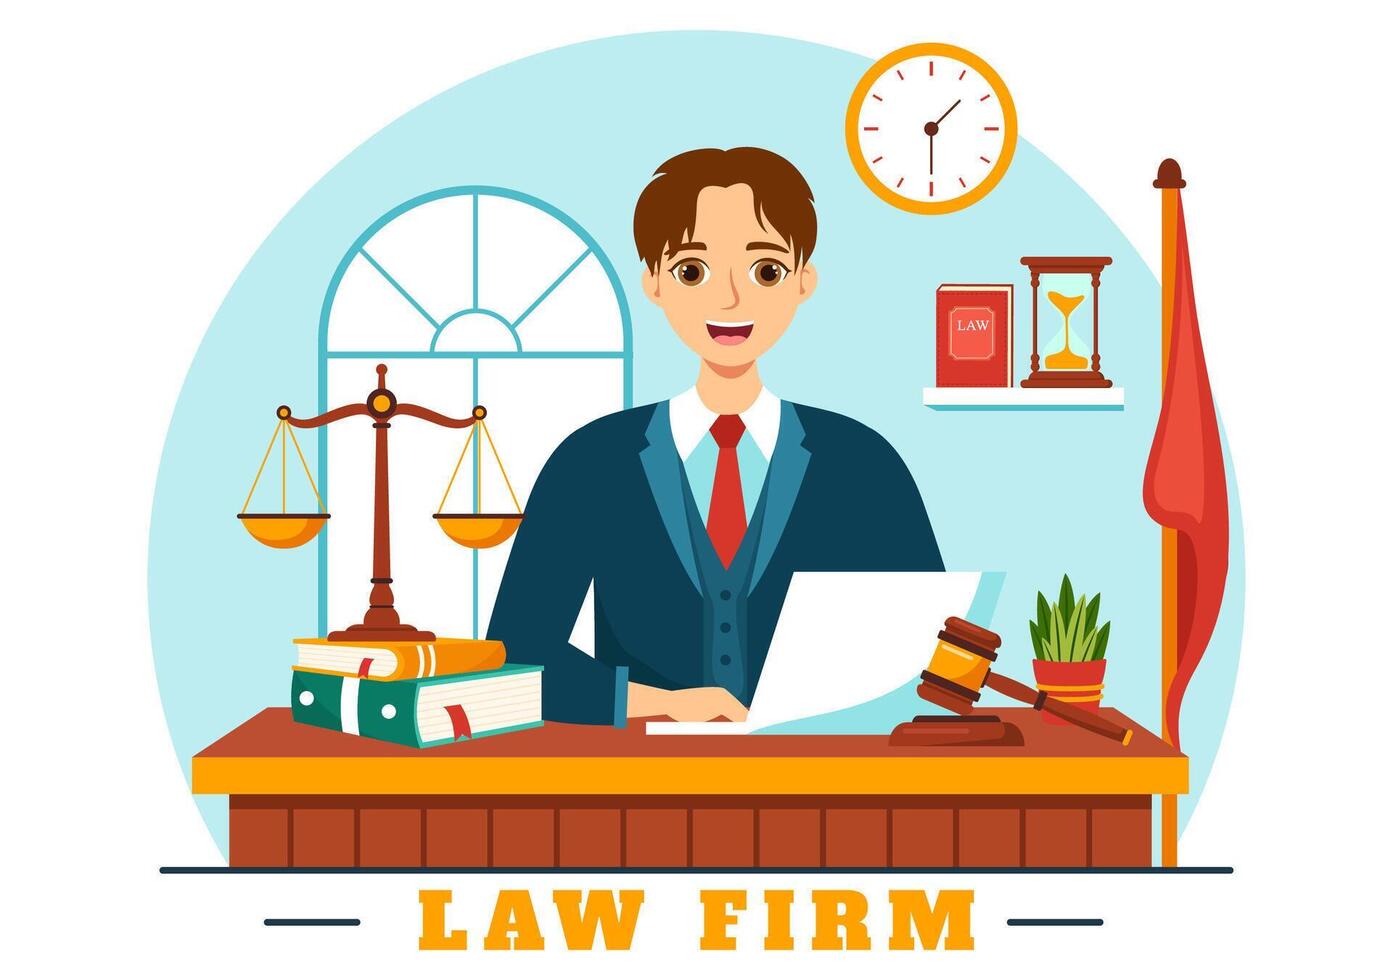 wet firma Diensten vector illustratie met gerechtigheid, wettelijk het advies, oordeel en advocaat consultant in vlak tekenfilm achtergrond ontwerp